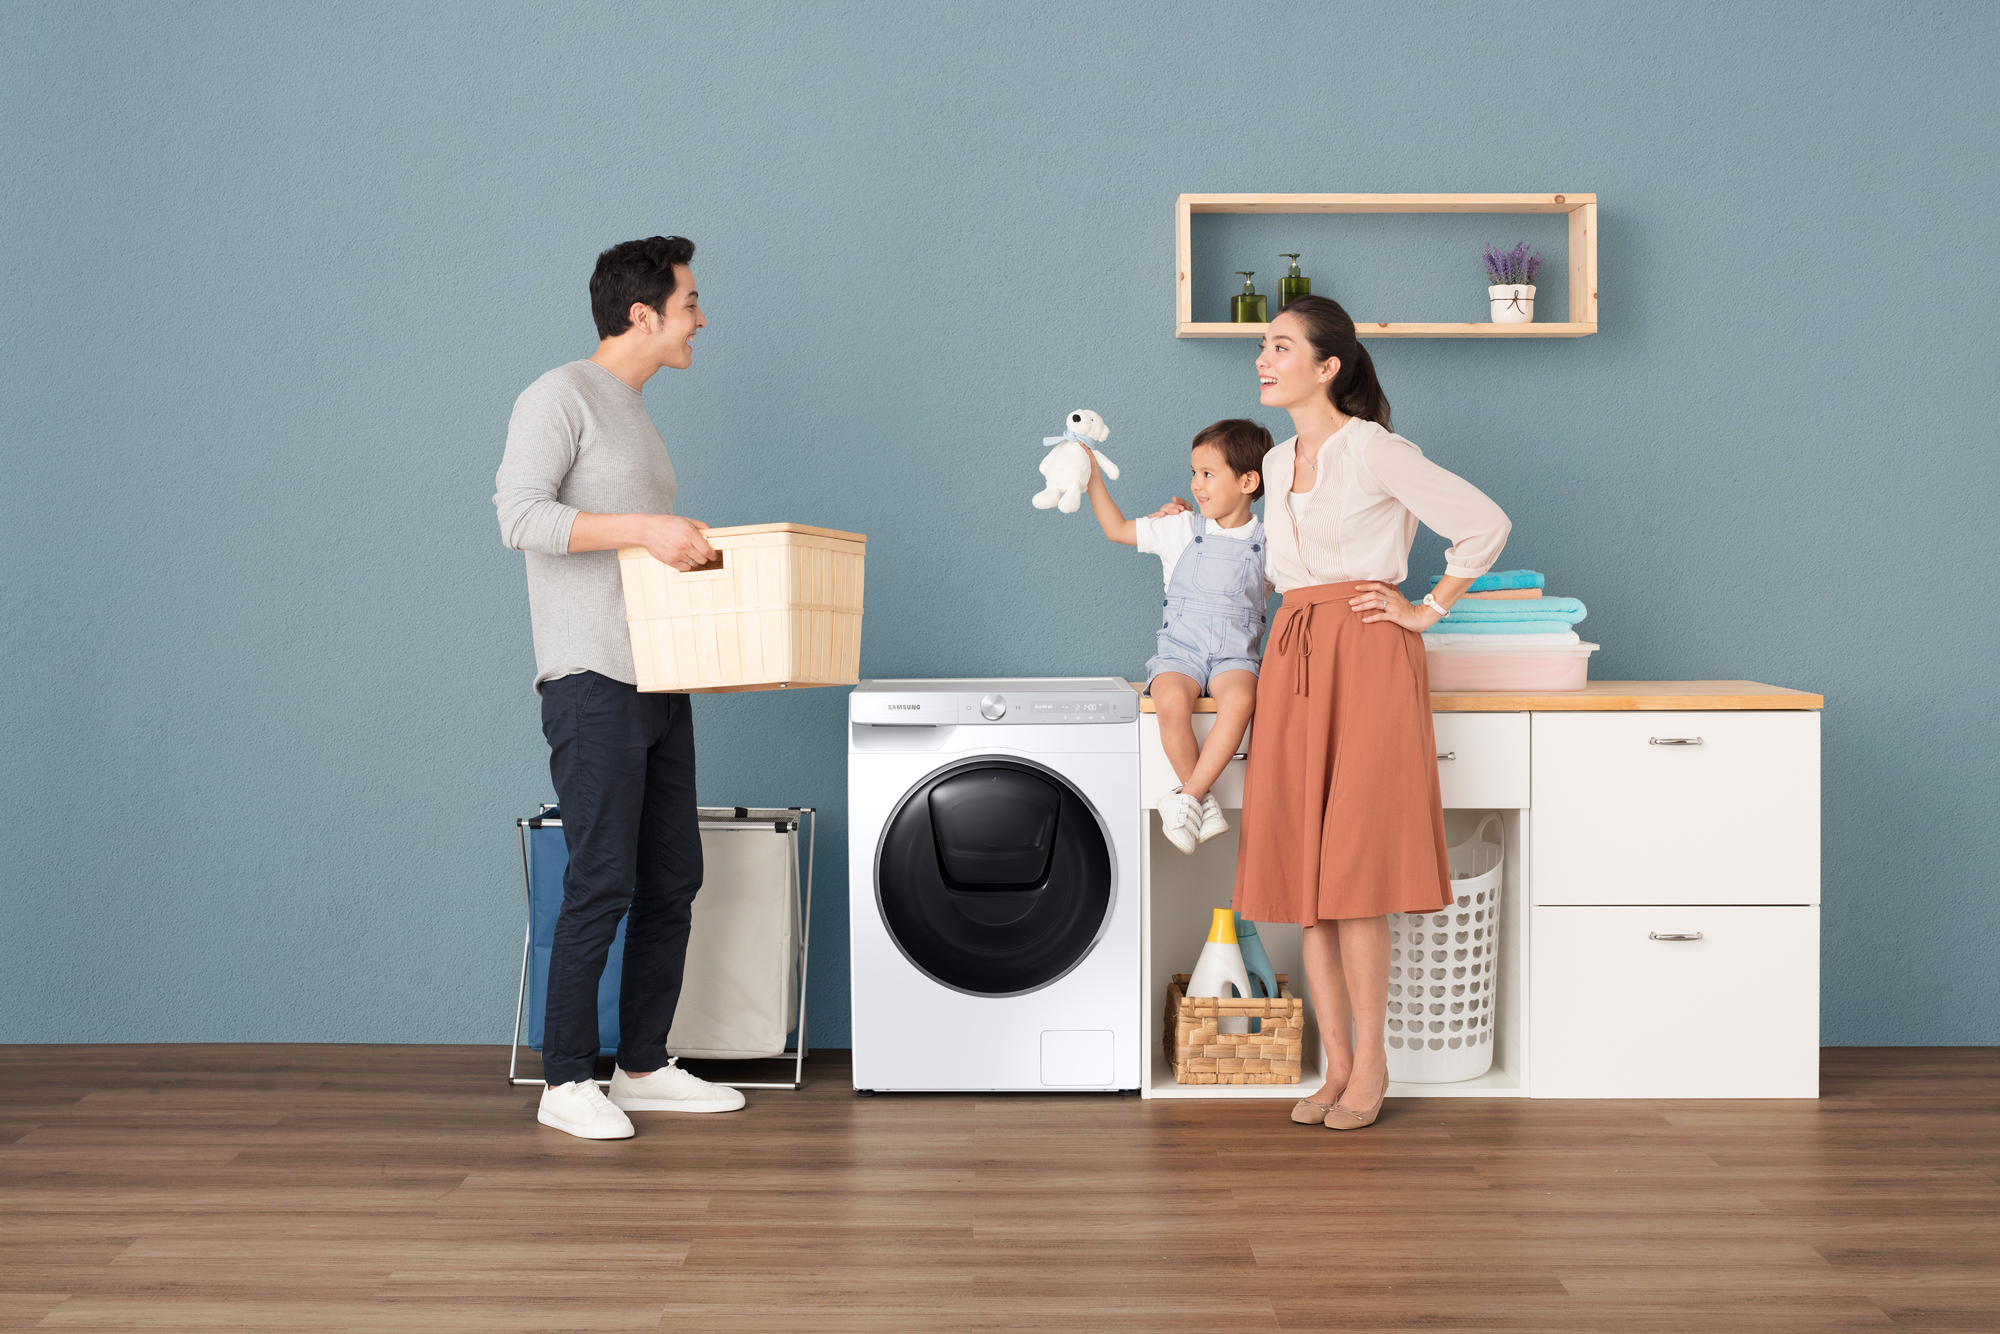 Máy giặt có trí tuệ đã gạt bỏ mọi mối bận tâm bao lâu nay của các gia đình như thế nào - Ảnh 1.